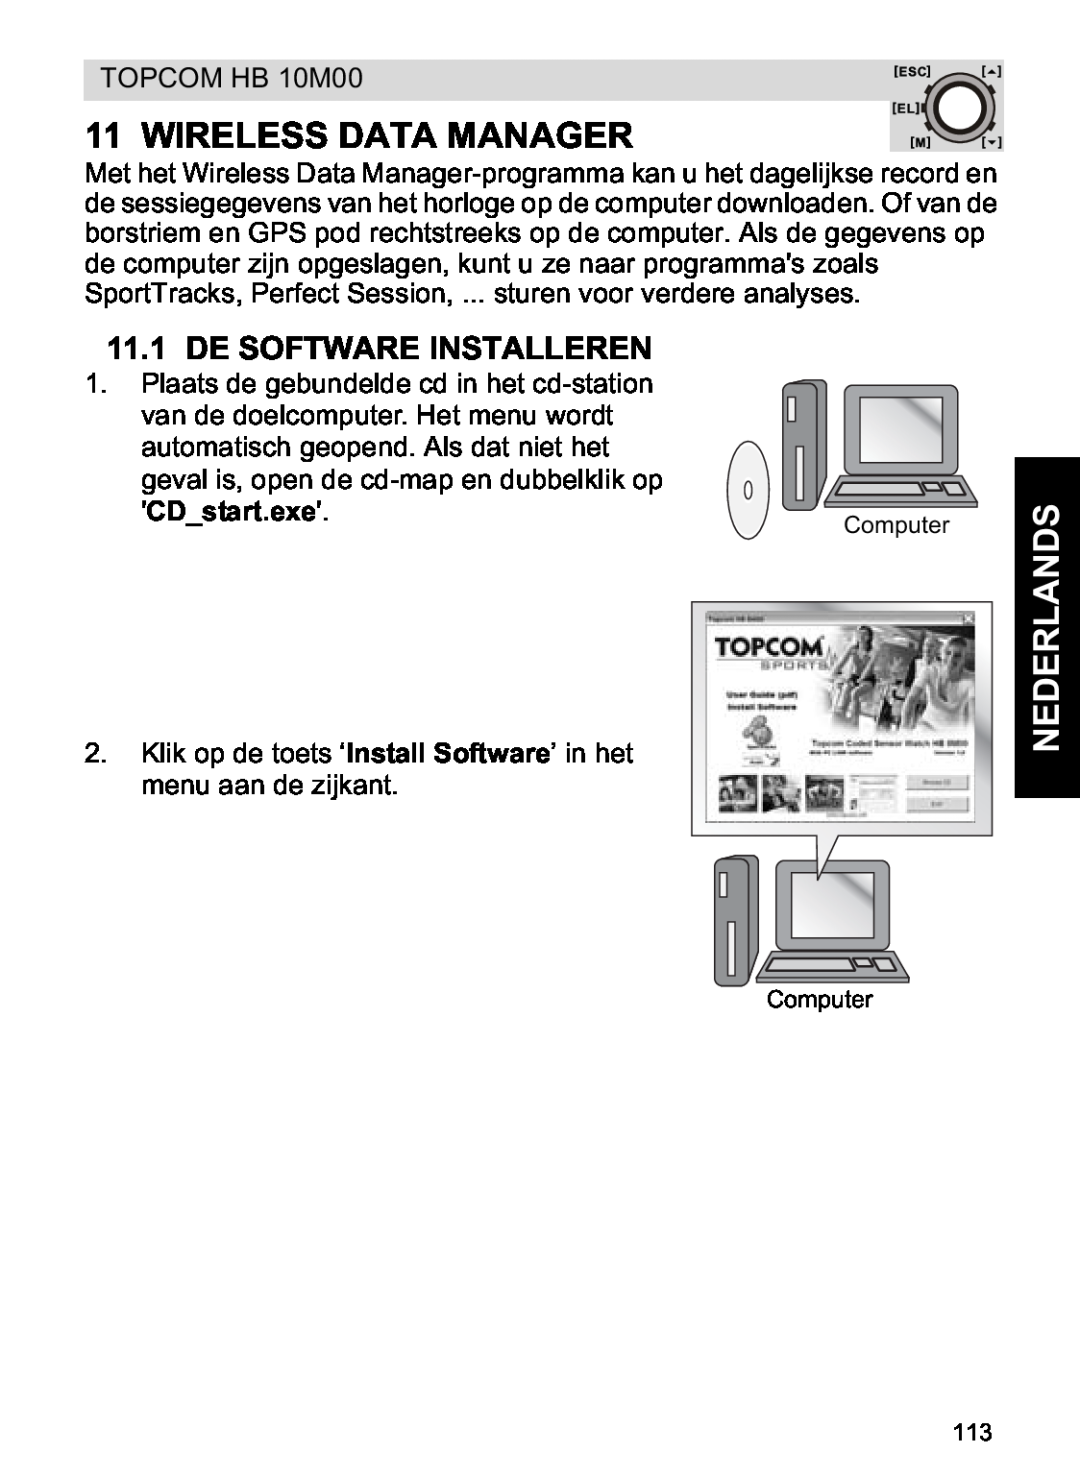 Topcom HB 10M00 manual De Software Installeren, CDstart.exe, Wireless Data Manager, Nederlands 